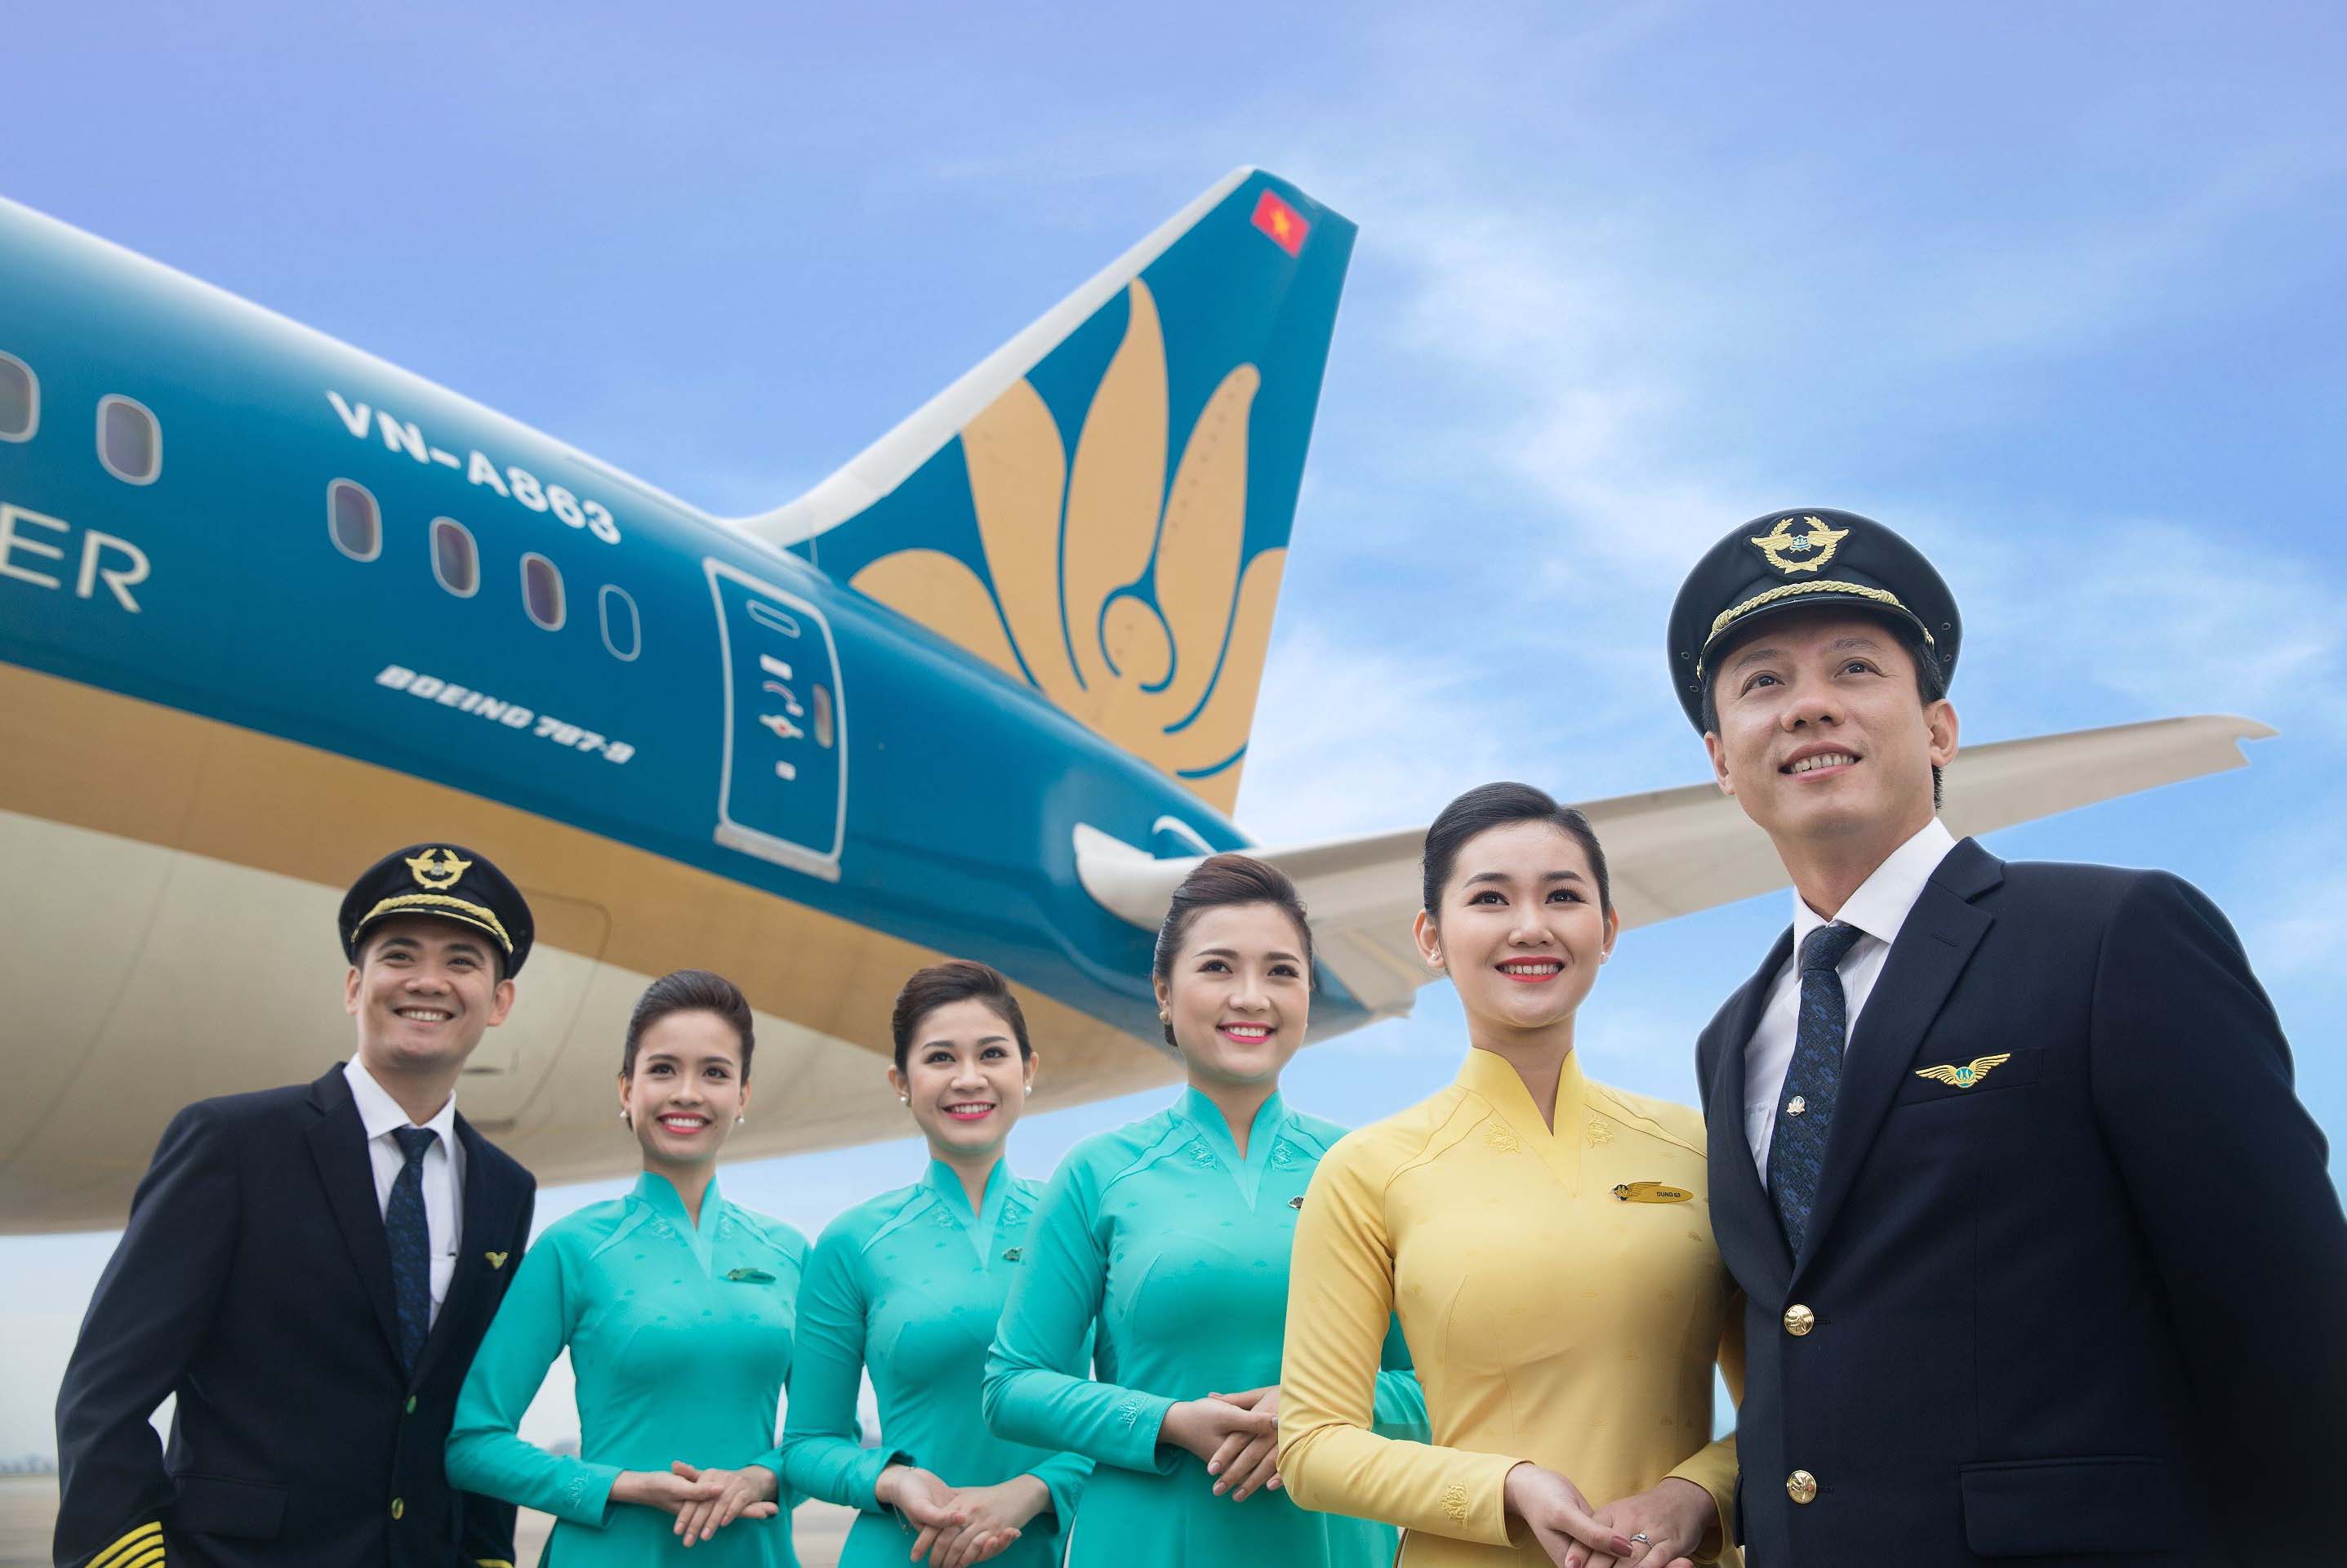 Vietnam Airlines, VietJet Air, Jetstar Pacific ở đâu trên bảng xếp hạng Skytrax?